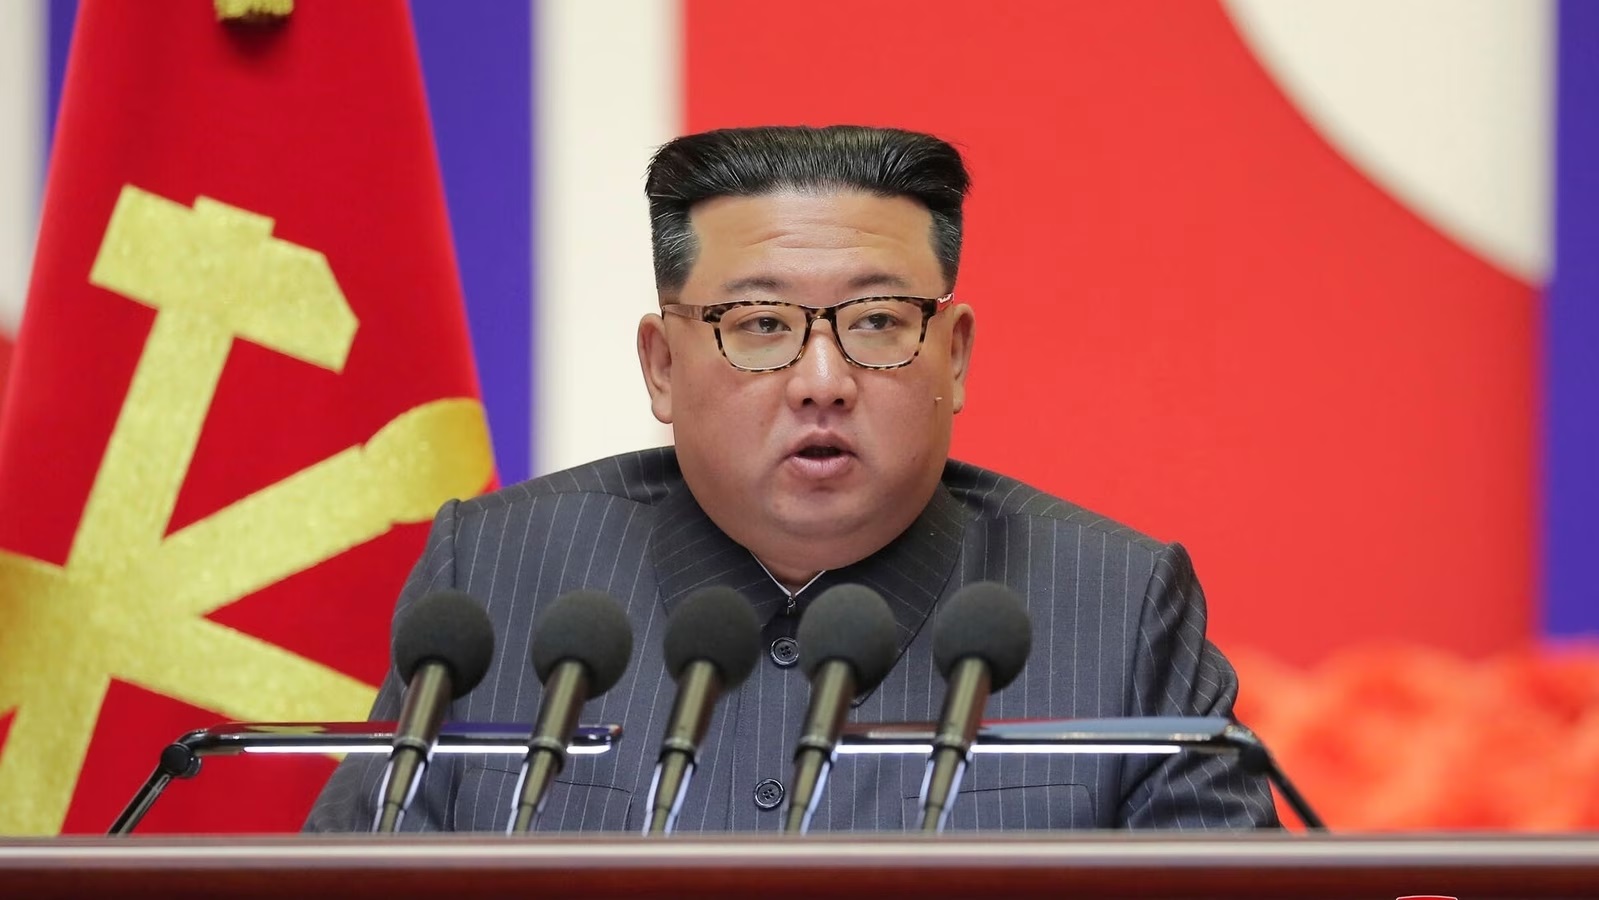 अमेरिकी राष्ट्रपति चुनाव से पहले किम की आक्रामक बयानबाजी तेज, दक्षिण कोरिया को प्रमुख दुश्मन बताया